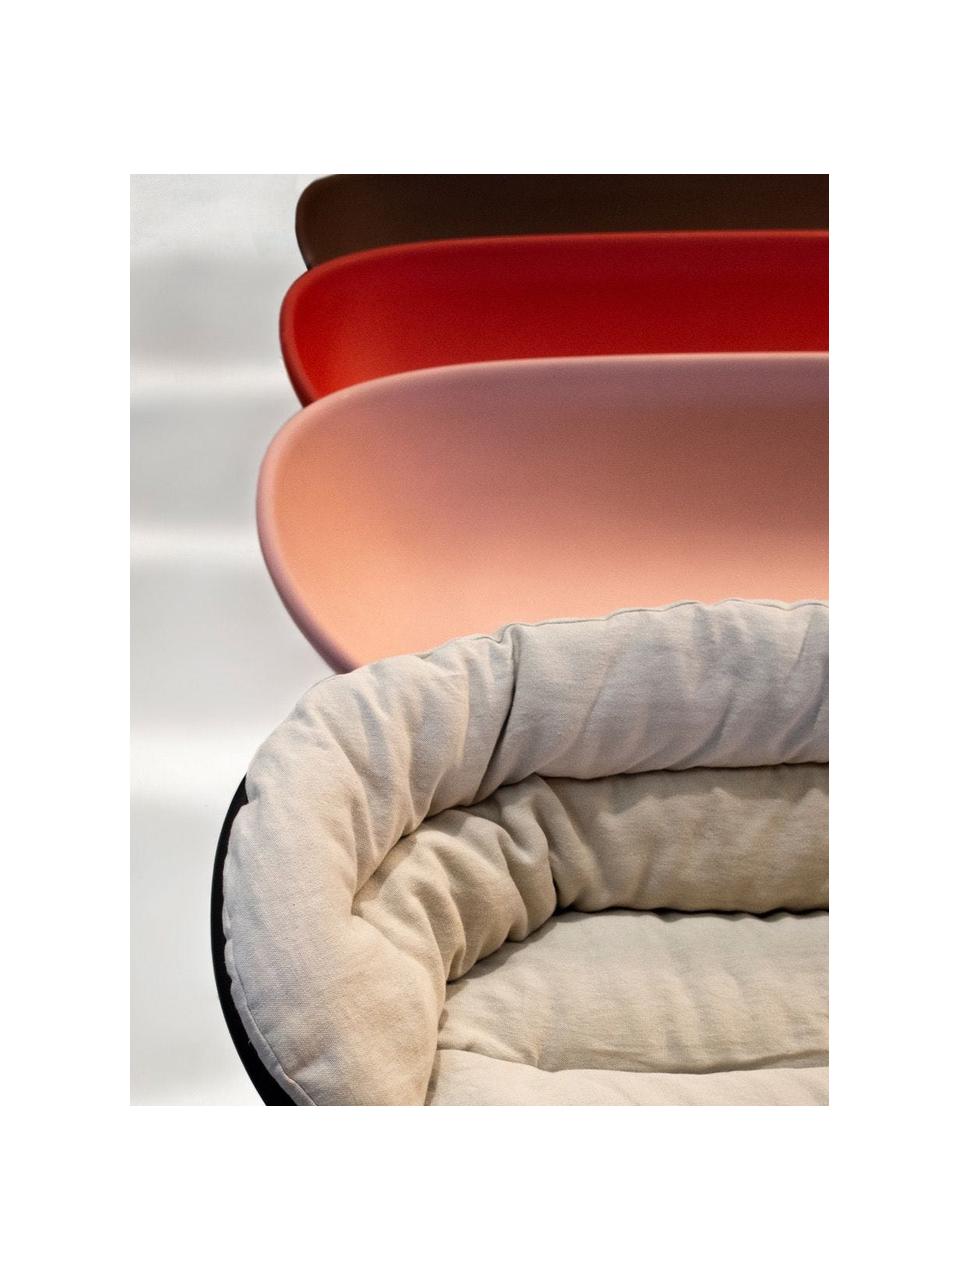 Sofa z tworzywa sztucznego Roly Poly (2-osobowa), Tworzywo sztuczne, Brudny różowy, S 175 x W 62 cm